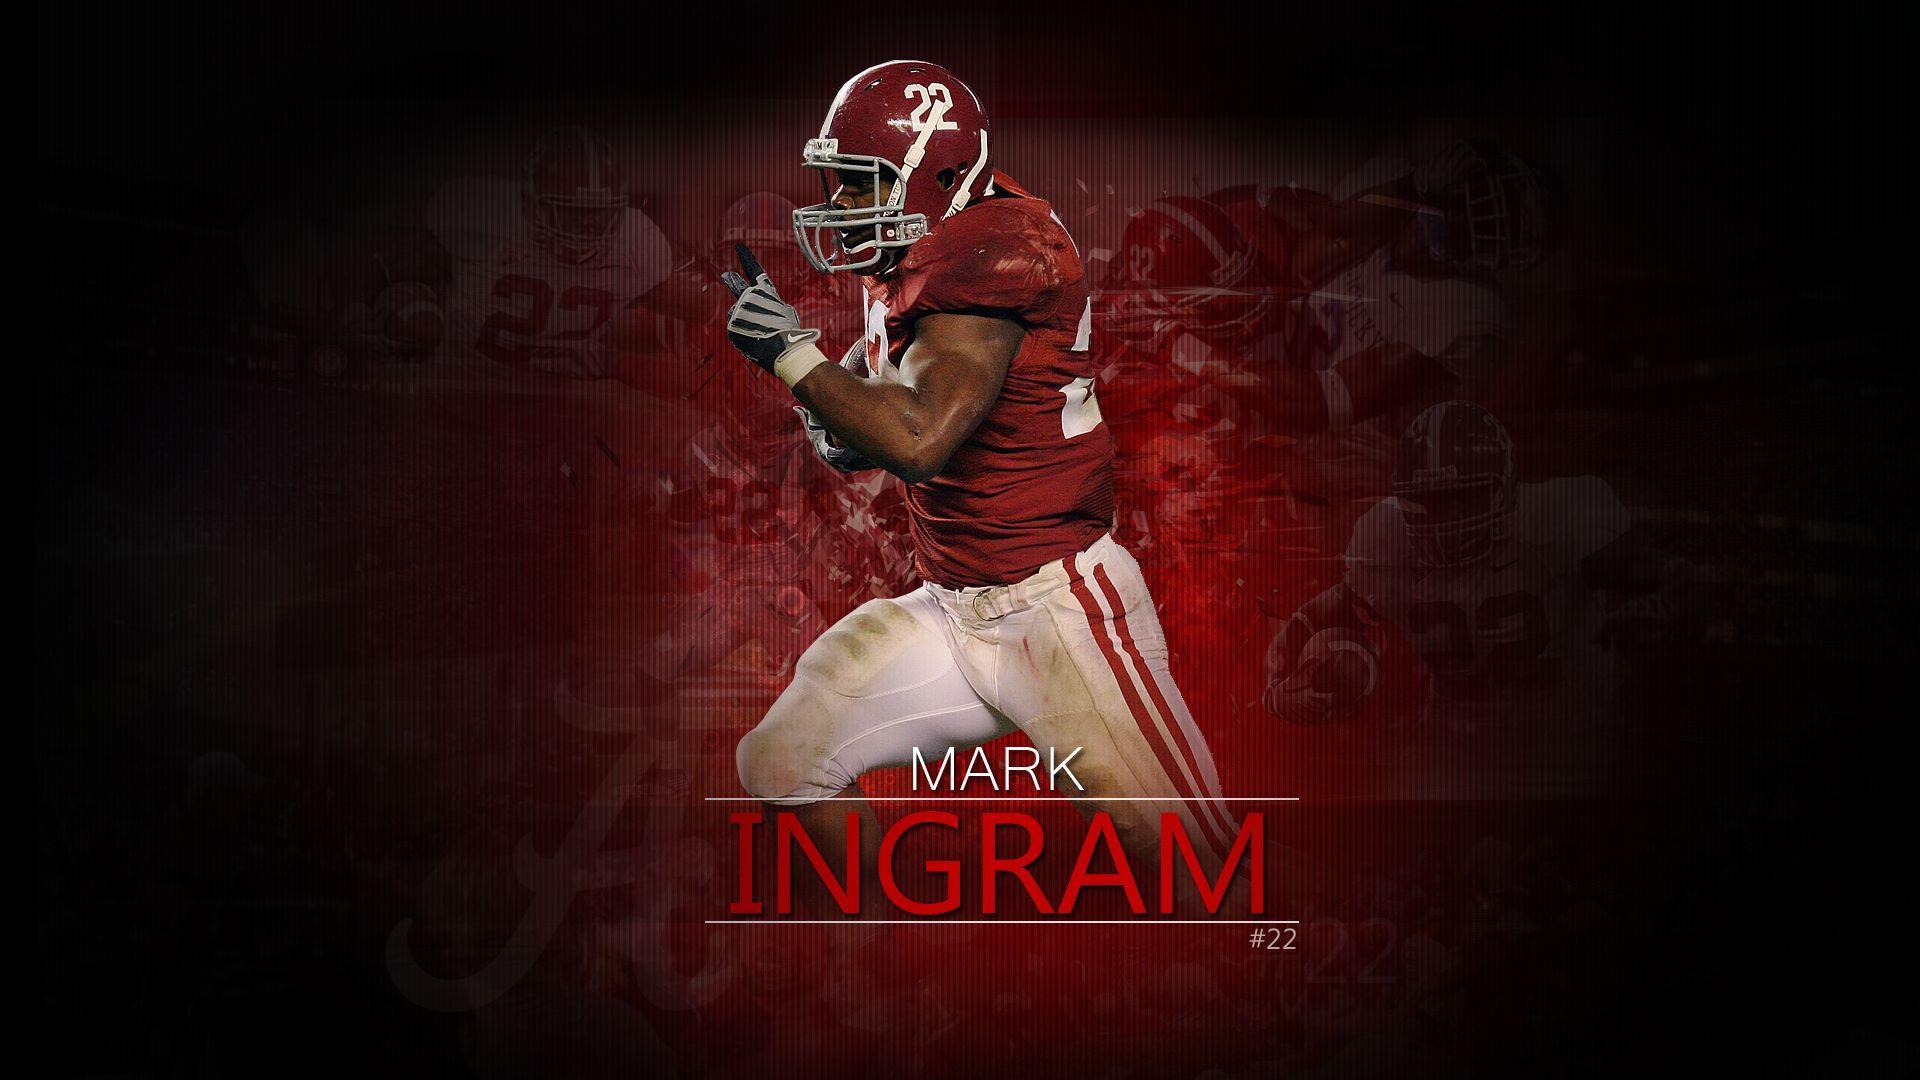 Mark Ingram. Yea Alabama Y'all Ready To Rolllll Tide!! Football